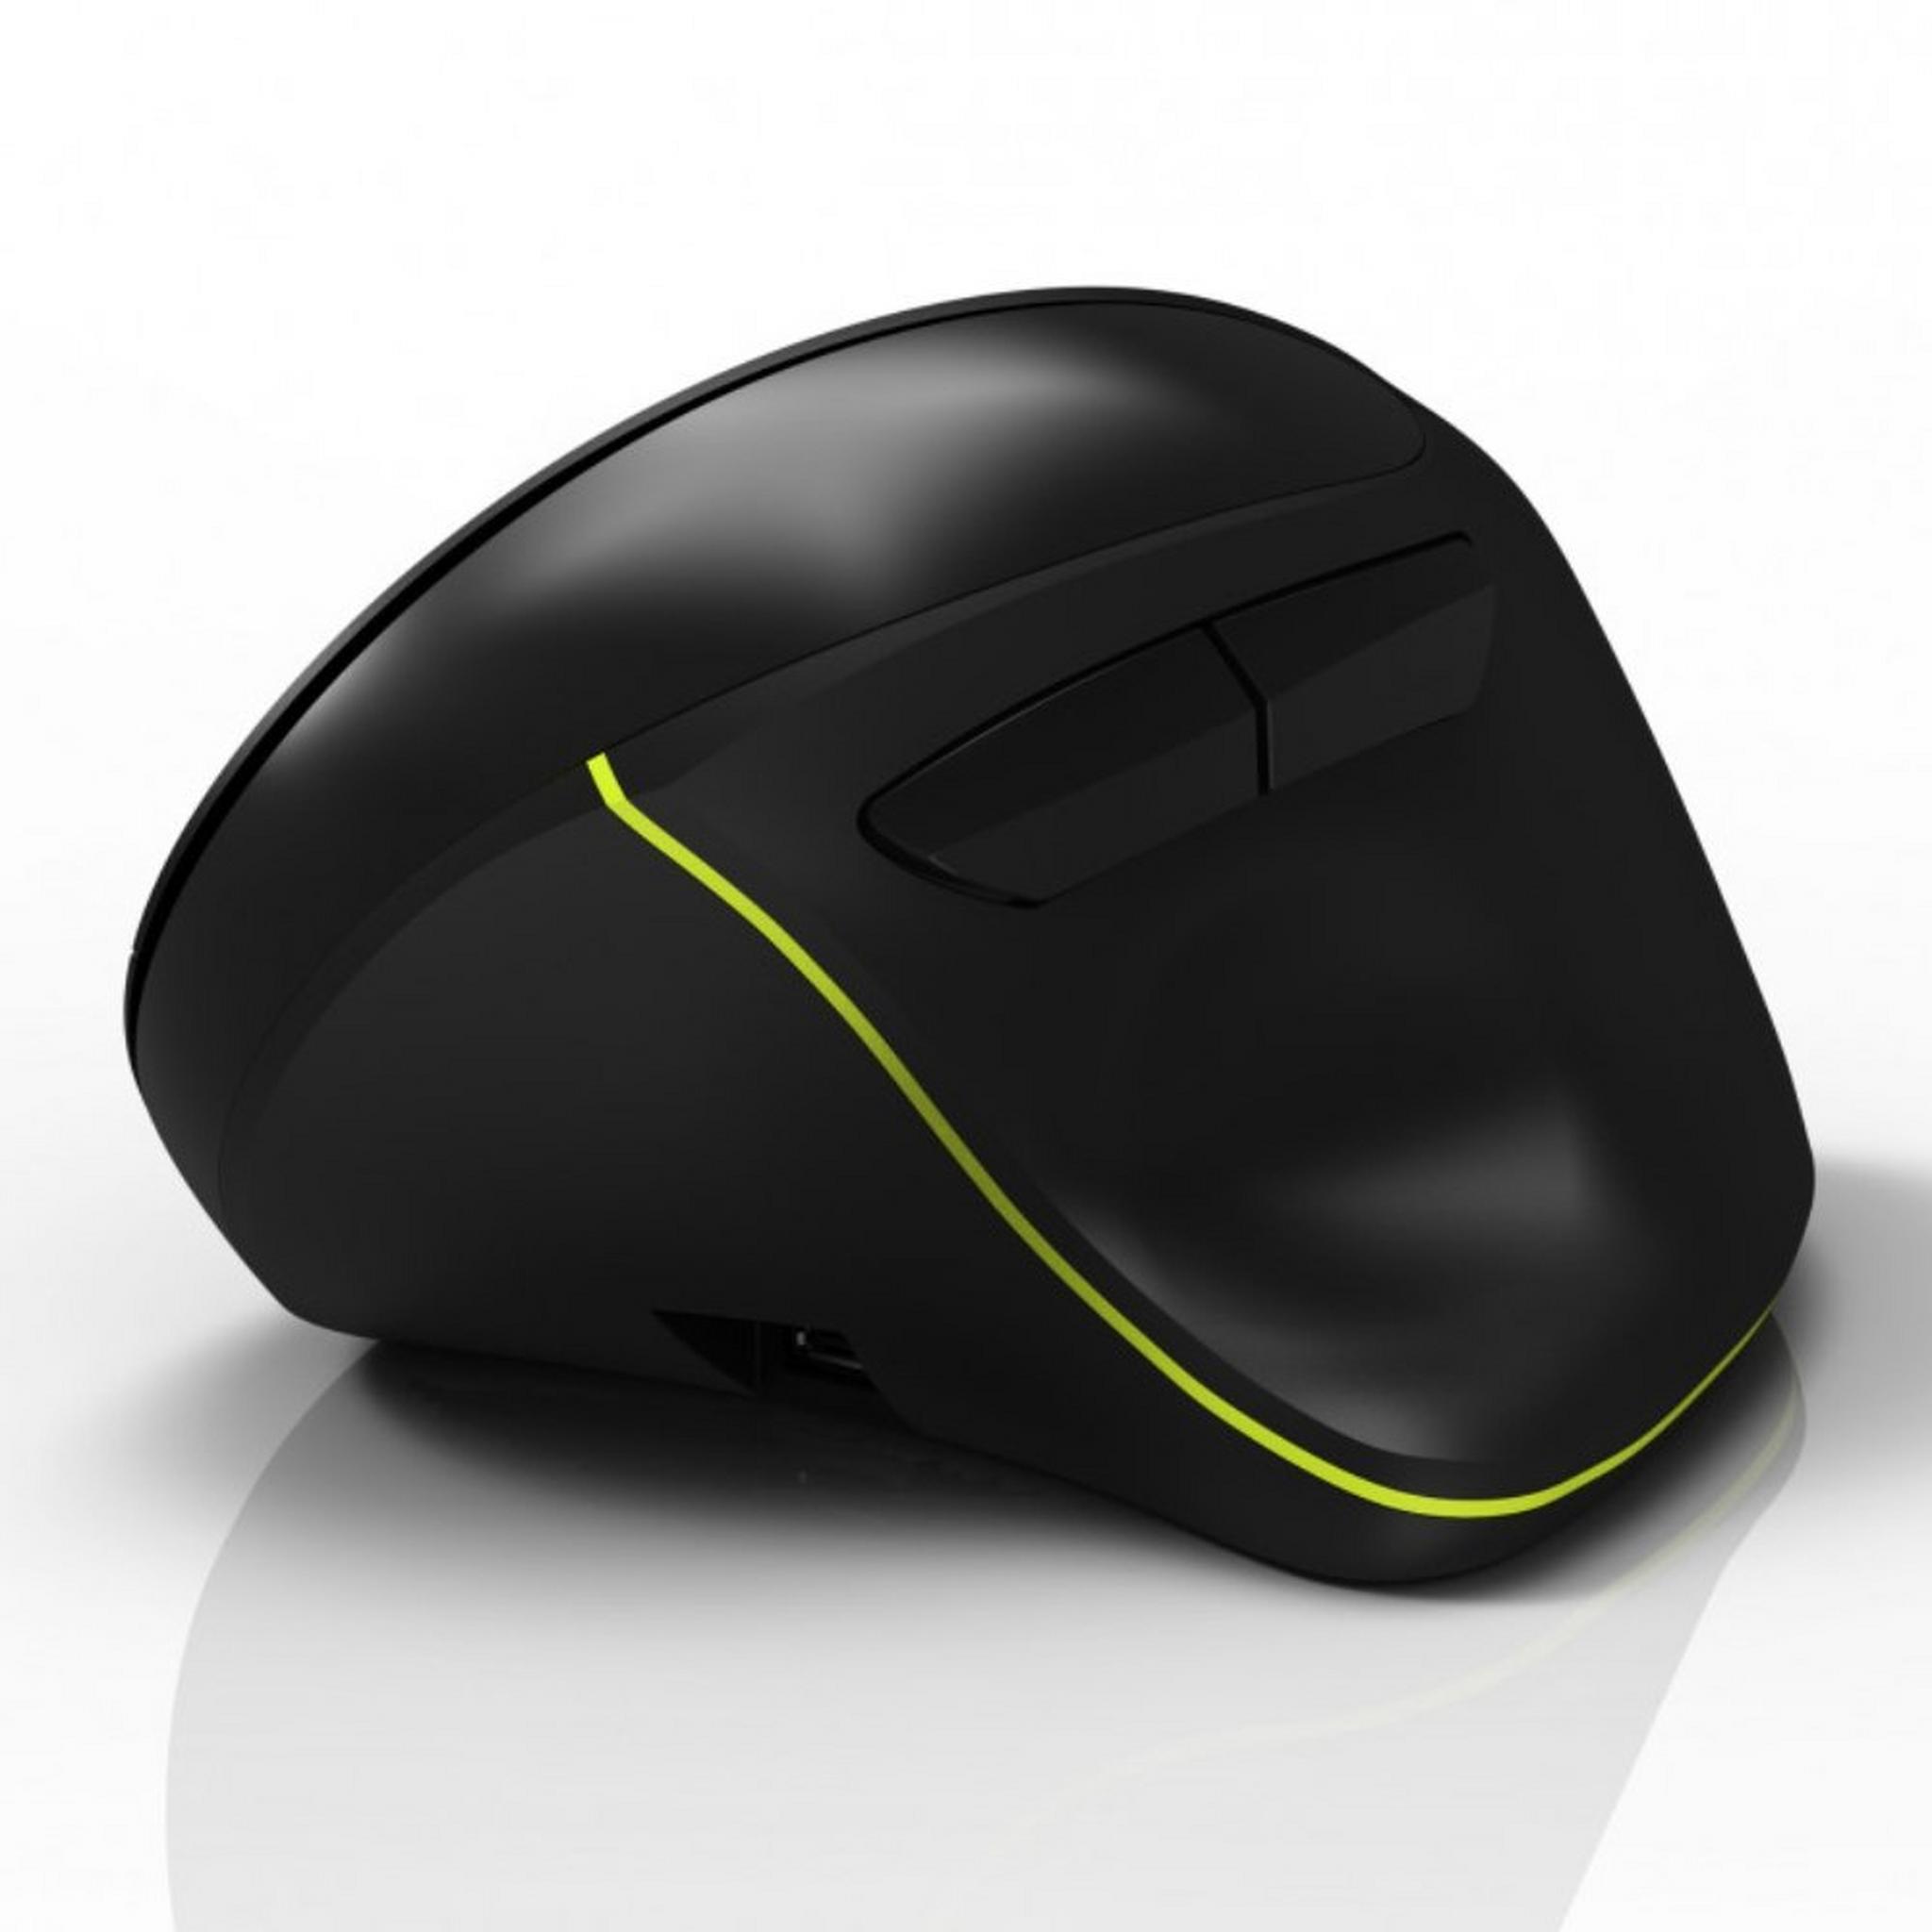 Port Mouse Ergonomic Rechargeable - Black (900706-BT)